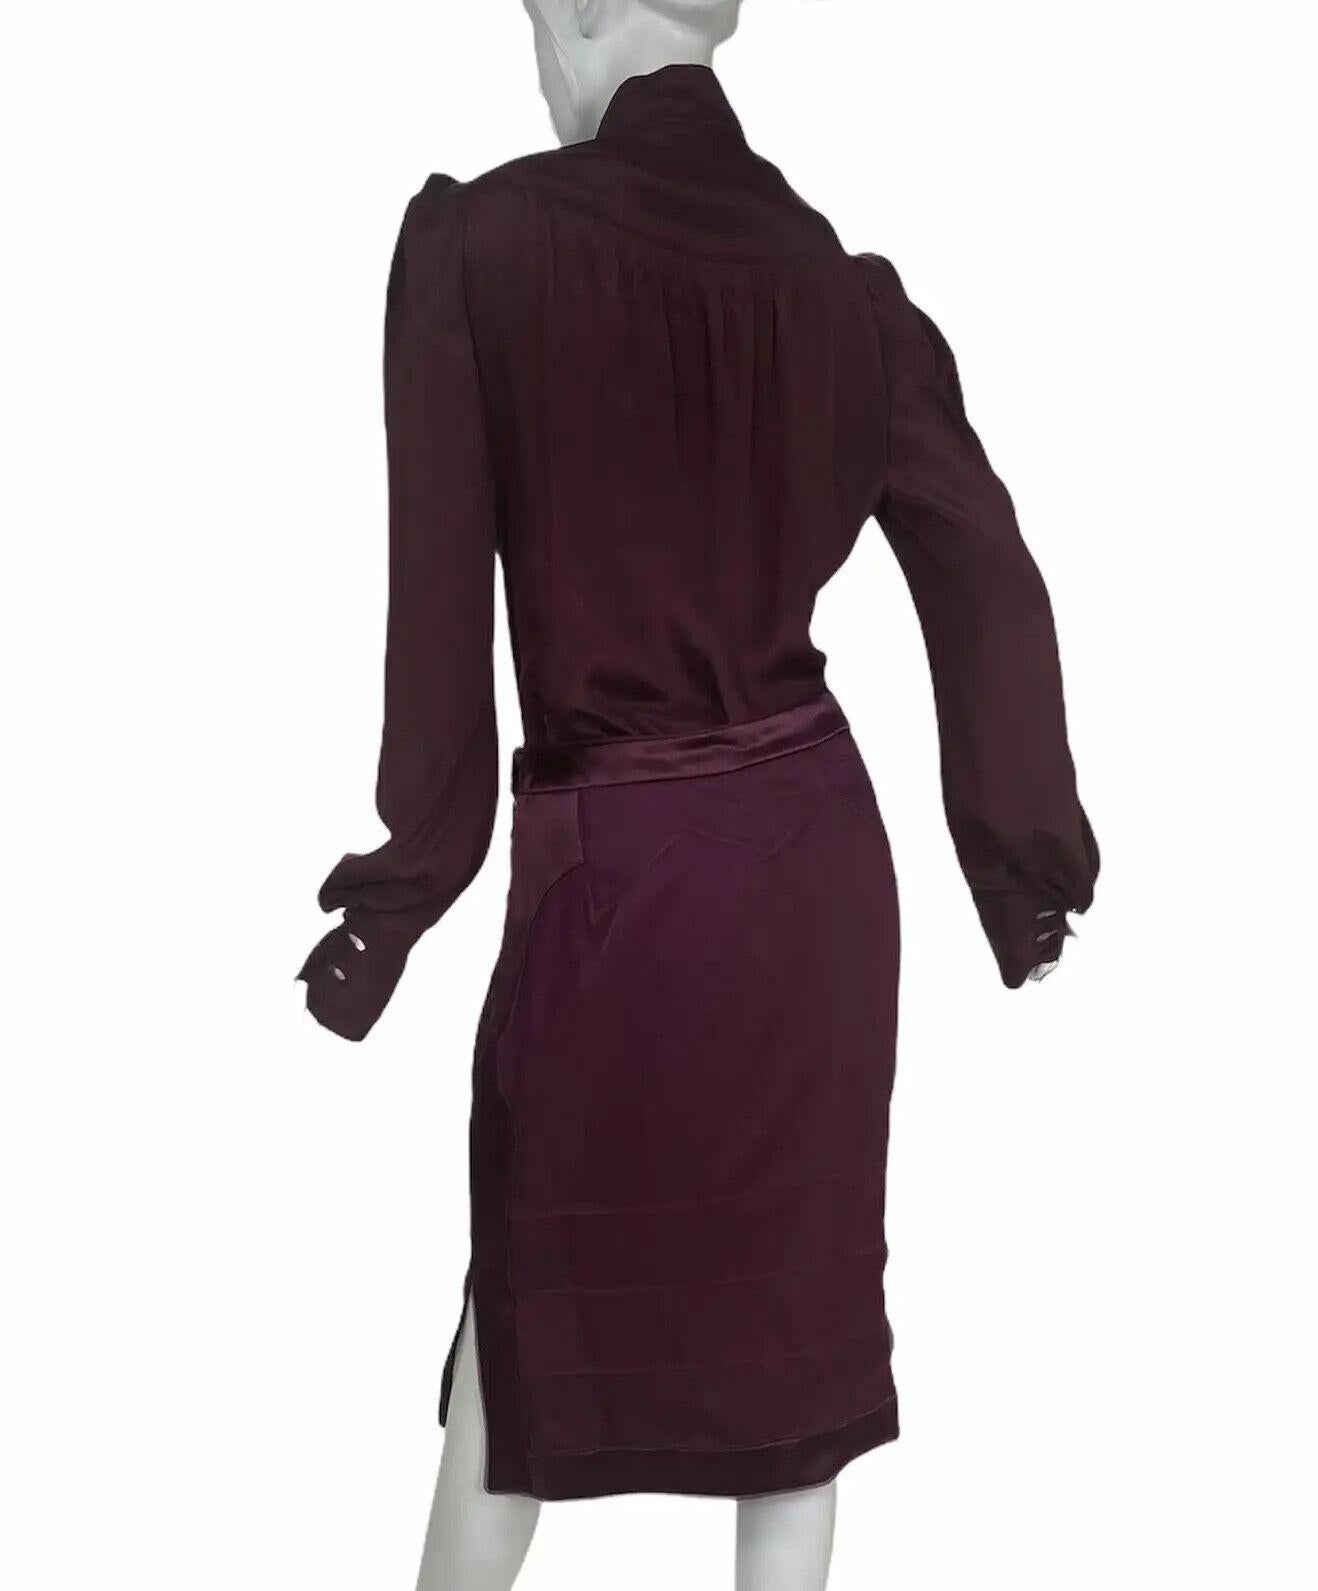 Millésime 2004 
Tom Ford pour Yves Saint Laurent
Costume Chinoiserie en soie bourgogne
FR Taille 40 - US 8 
100% soie
Nouveau, avec étiquettes
État impeccable.

La jupe du défilé est également disponible dans notre magasin.